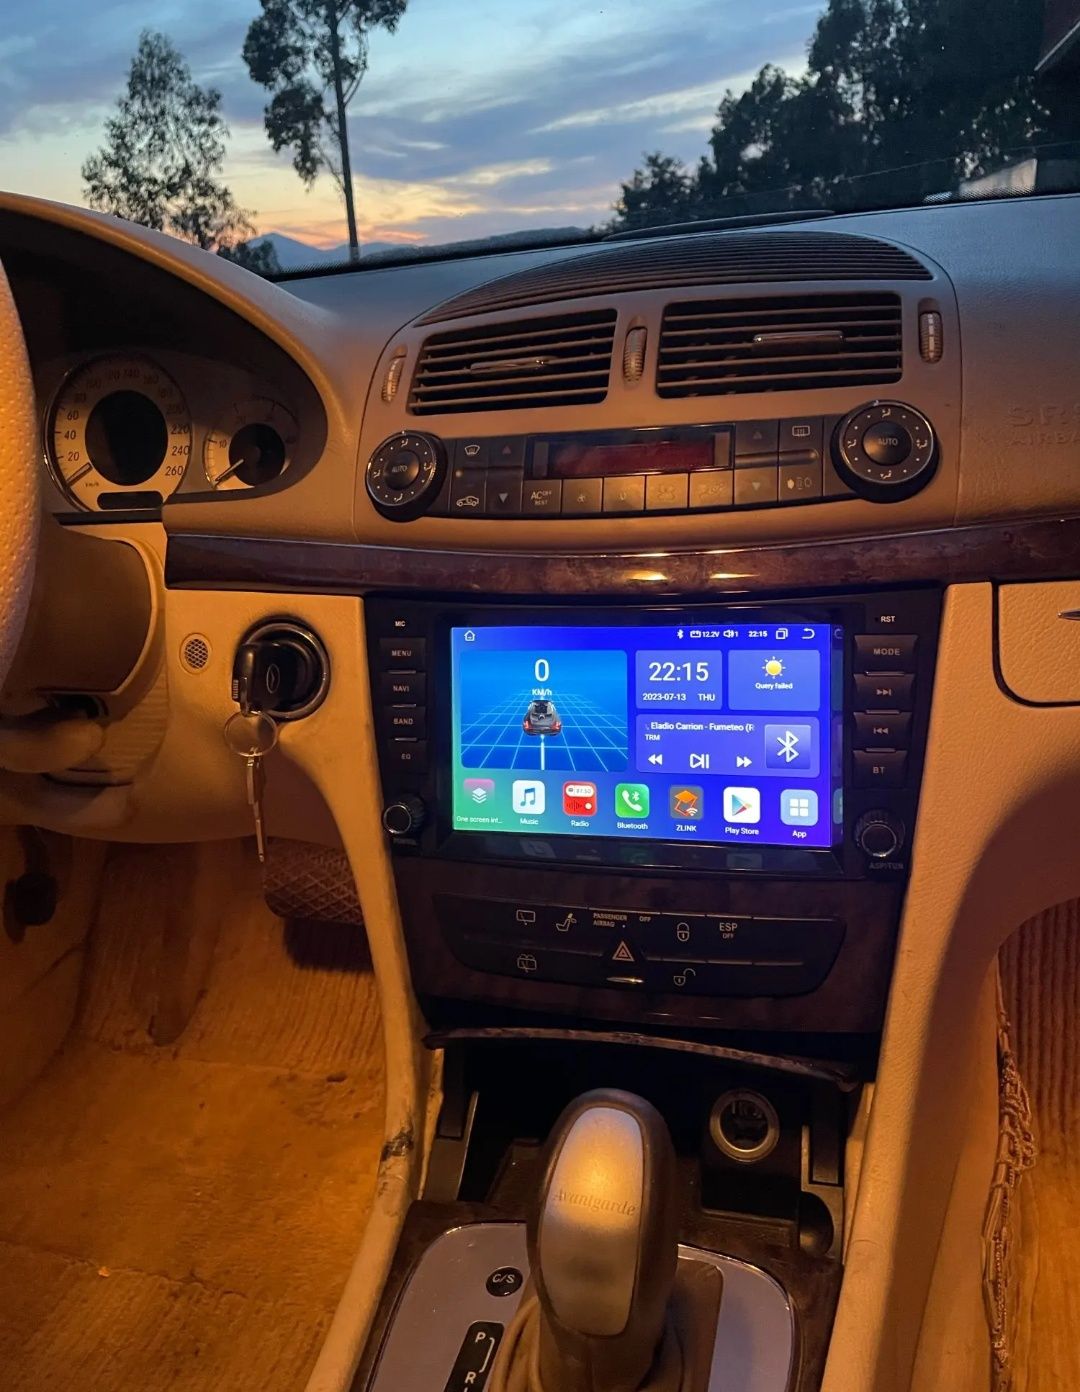 Rádio Android 12 com GPS Mercedes W211/CLS(Artigo Novo)